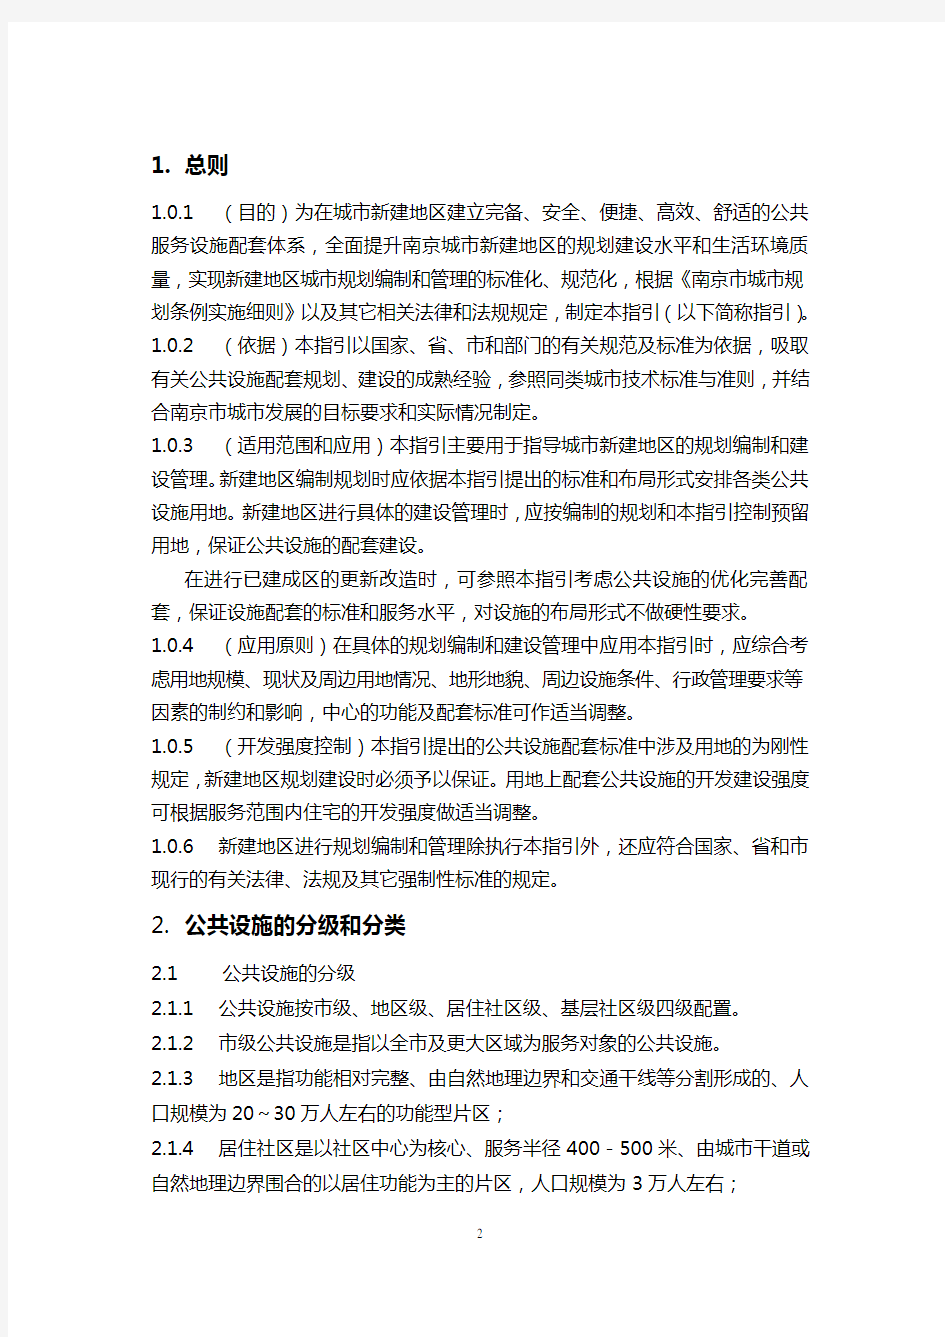 (完整版)《南京新建地区公共设施配套标准规划指引(报审稿)》